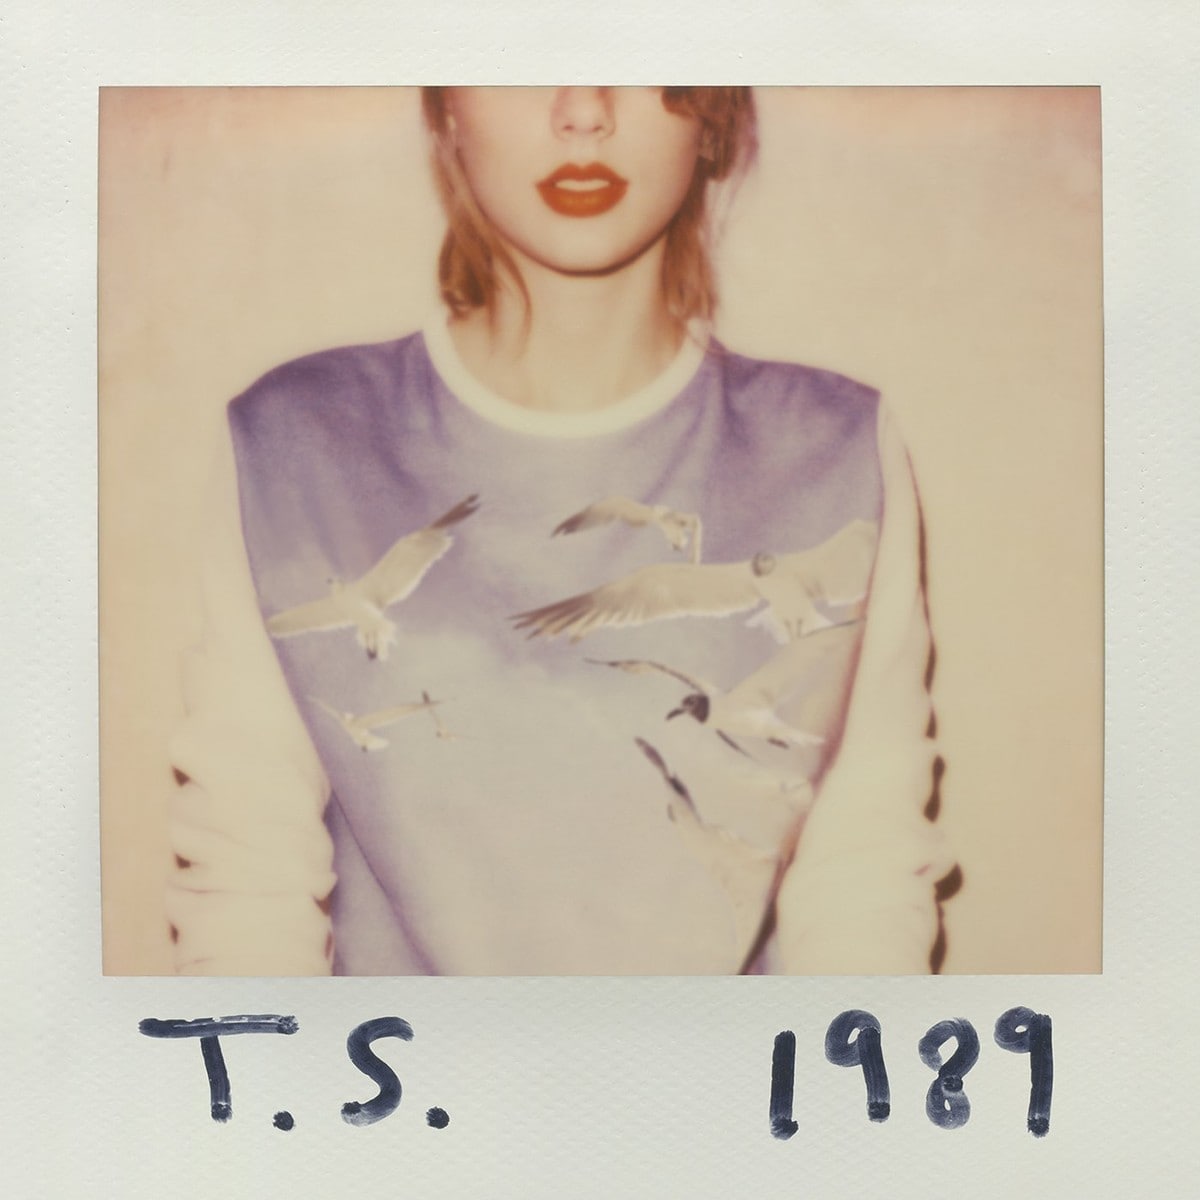 1989 di Taylor Swift non sarà disponibile su Apple Music